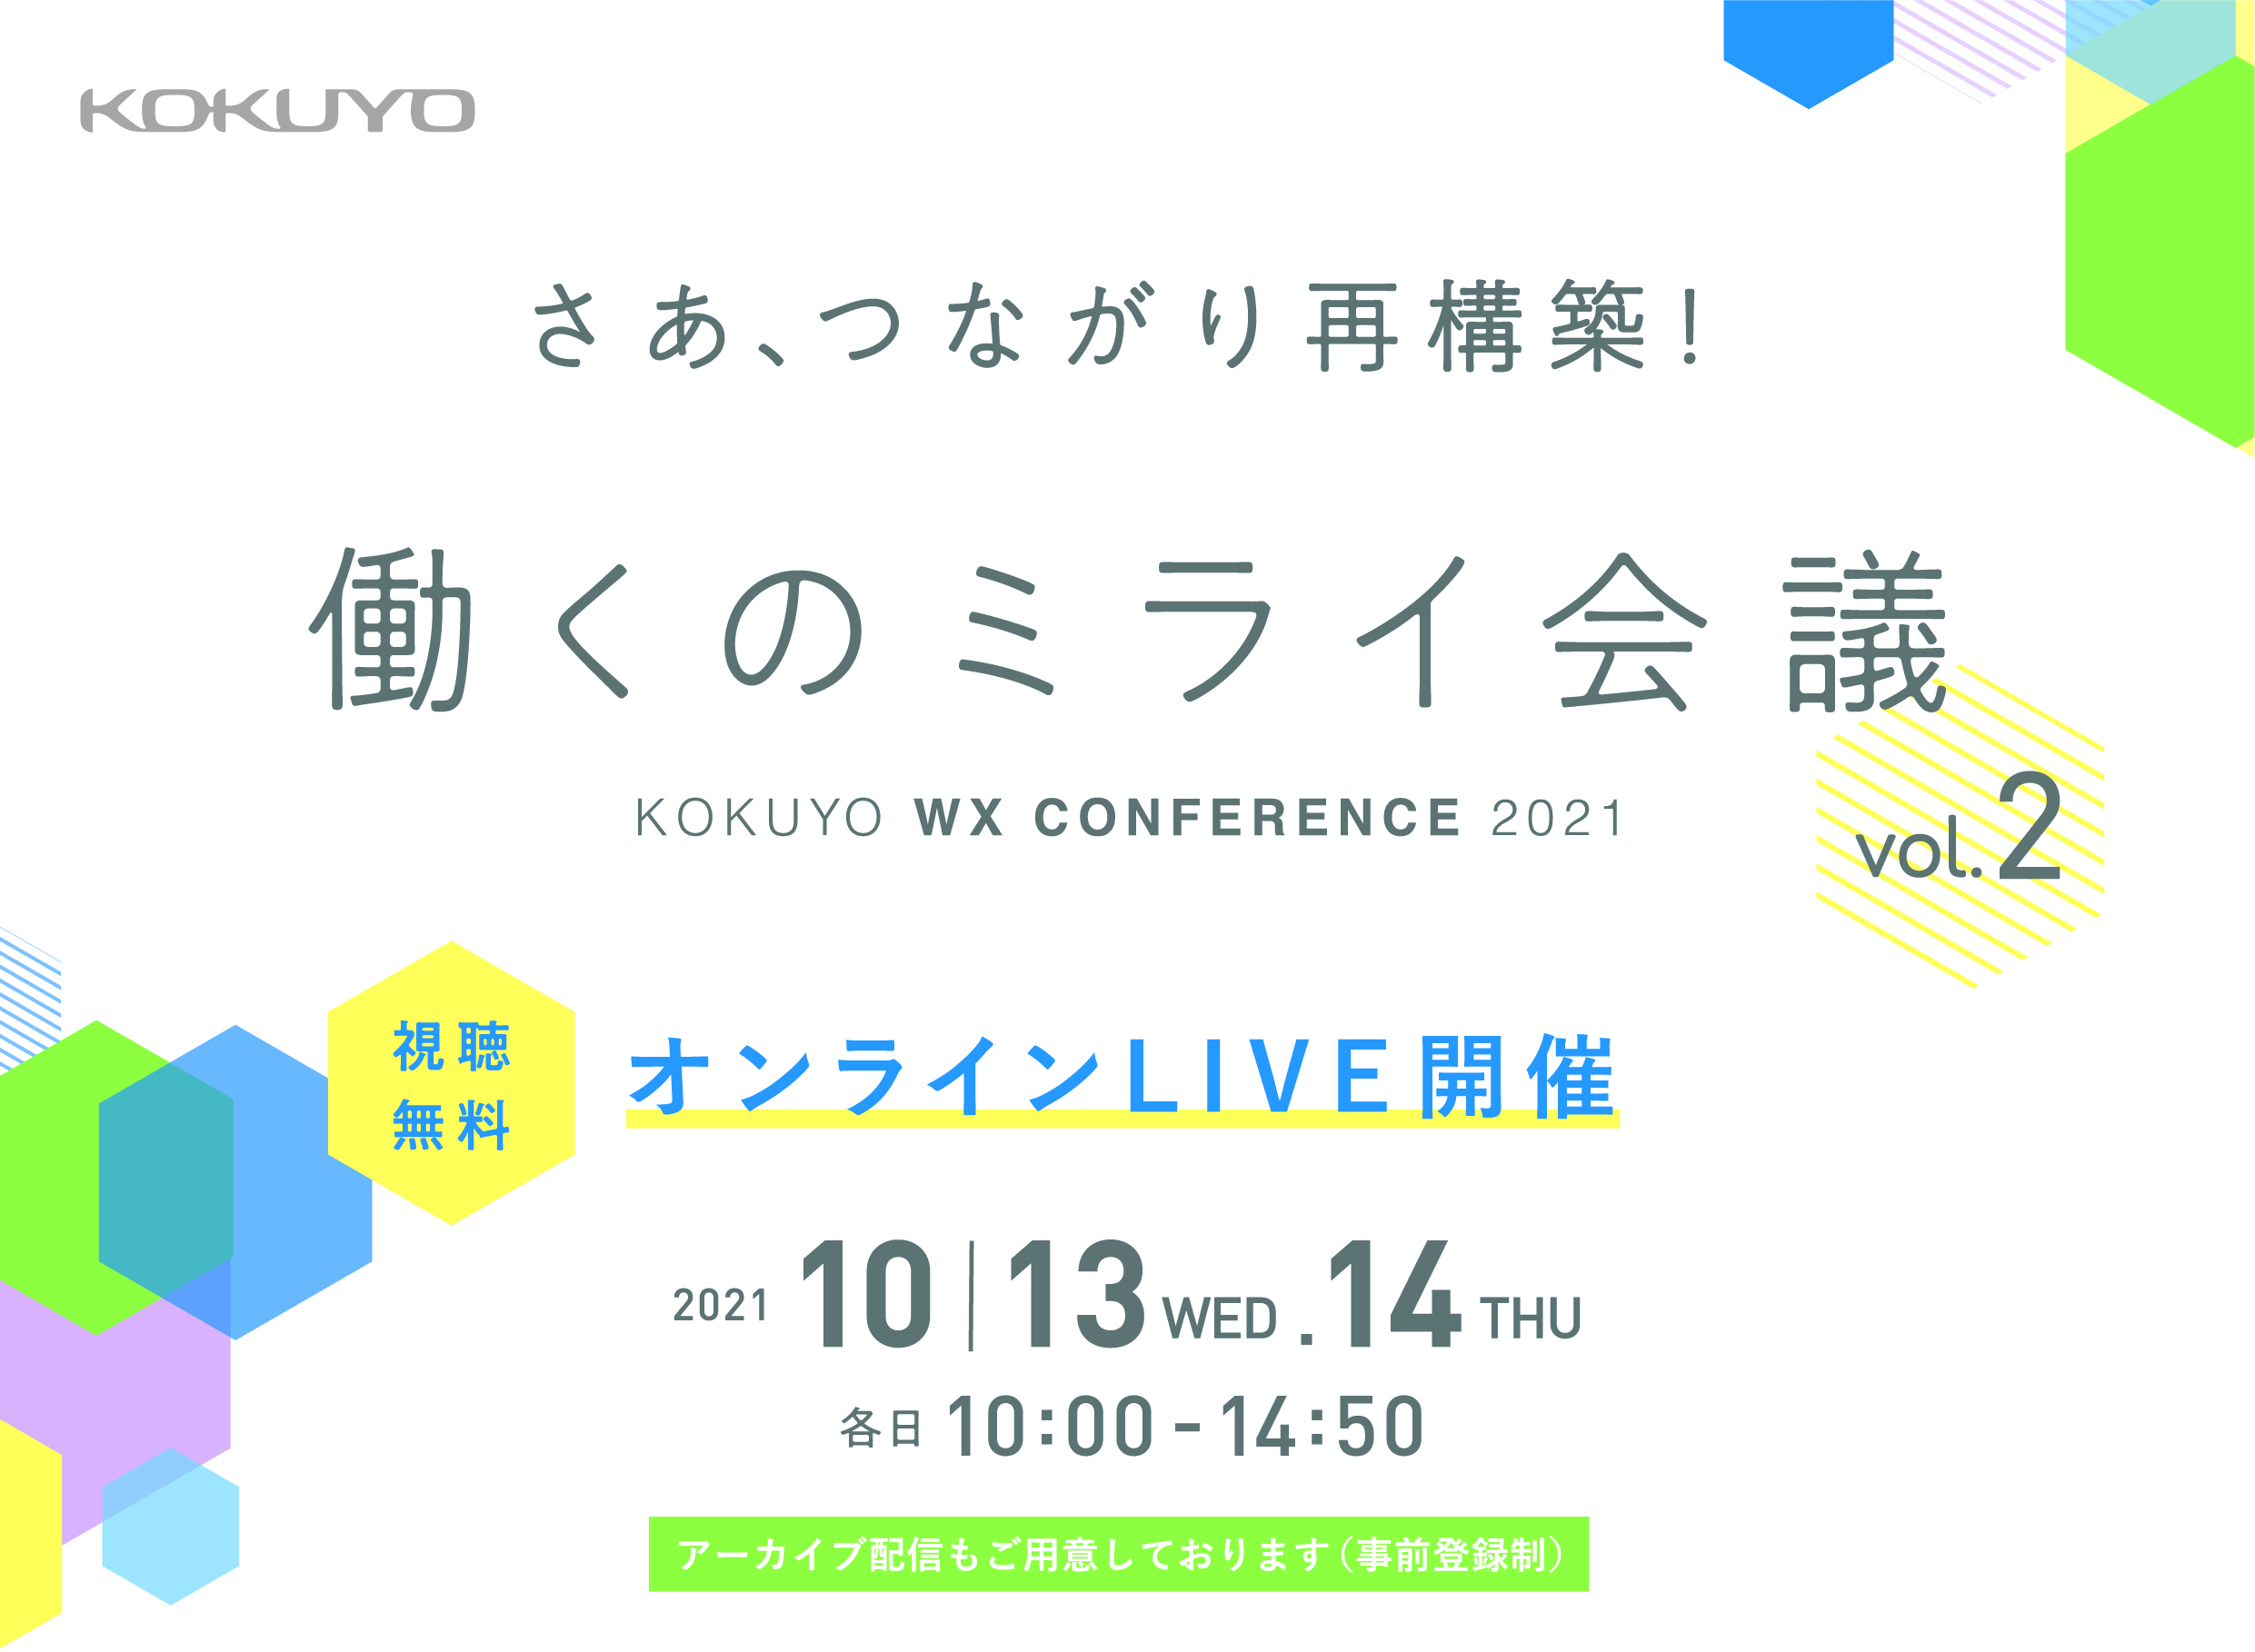 Kokuyo オンライン カンファレンス 開催 働く のつながりを強く 新しく 再構築する 2日間 働くのミライ会議vol 2 Kokuyo Wxカンファレンス 21 を開催 コクヨ株式会社のプレスリリース